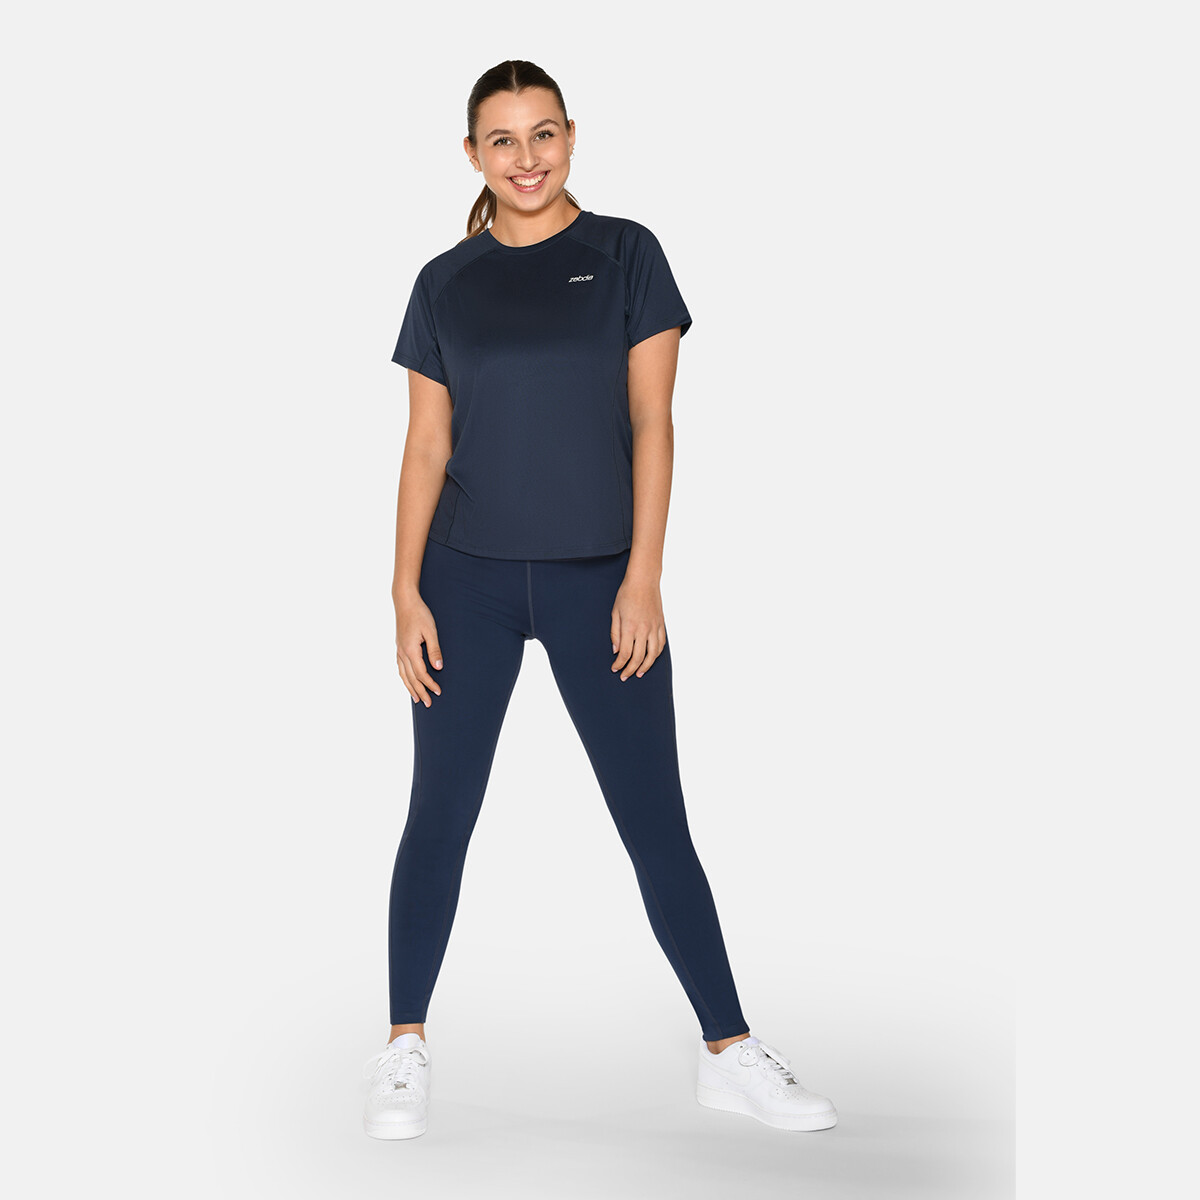 Billede af Zebdia Women Sports T-shirt, Farve: Blå, Størrelse: S, Dame hos Netlingeri.dk